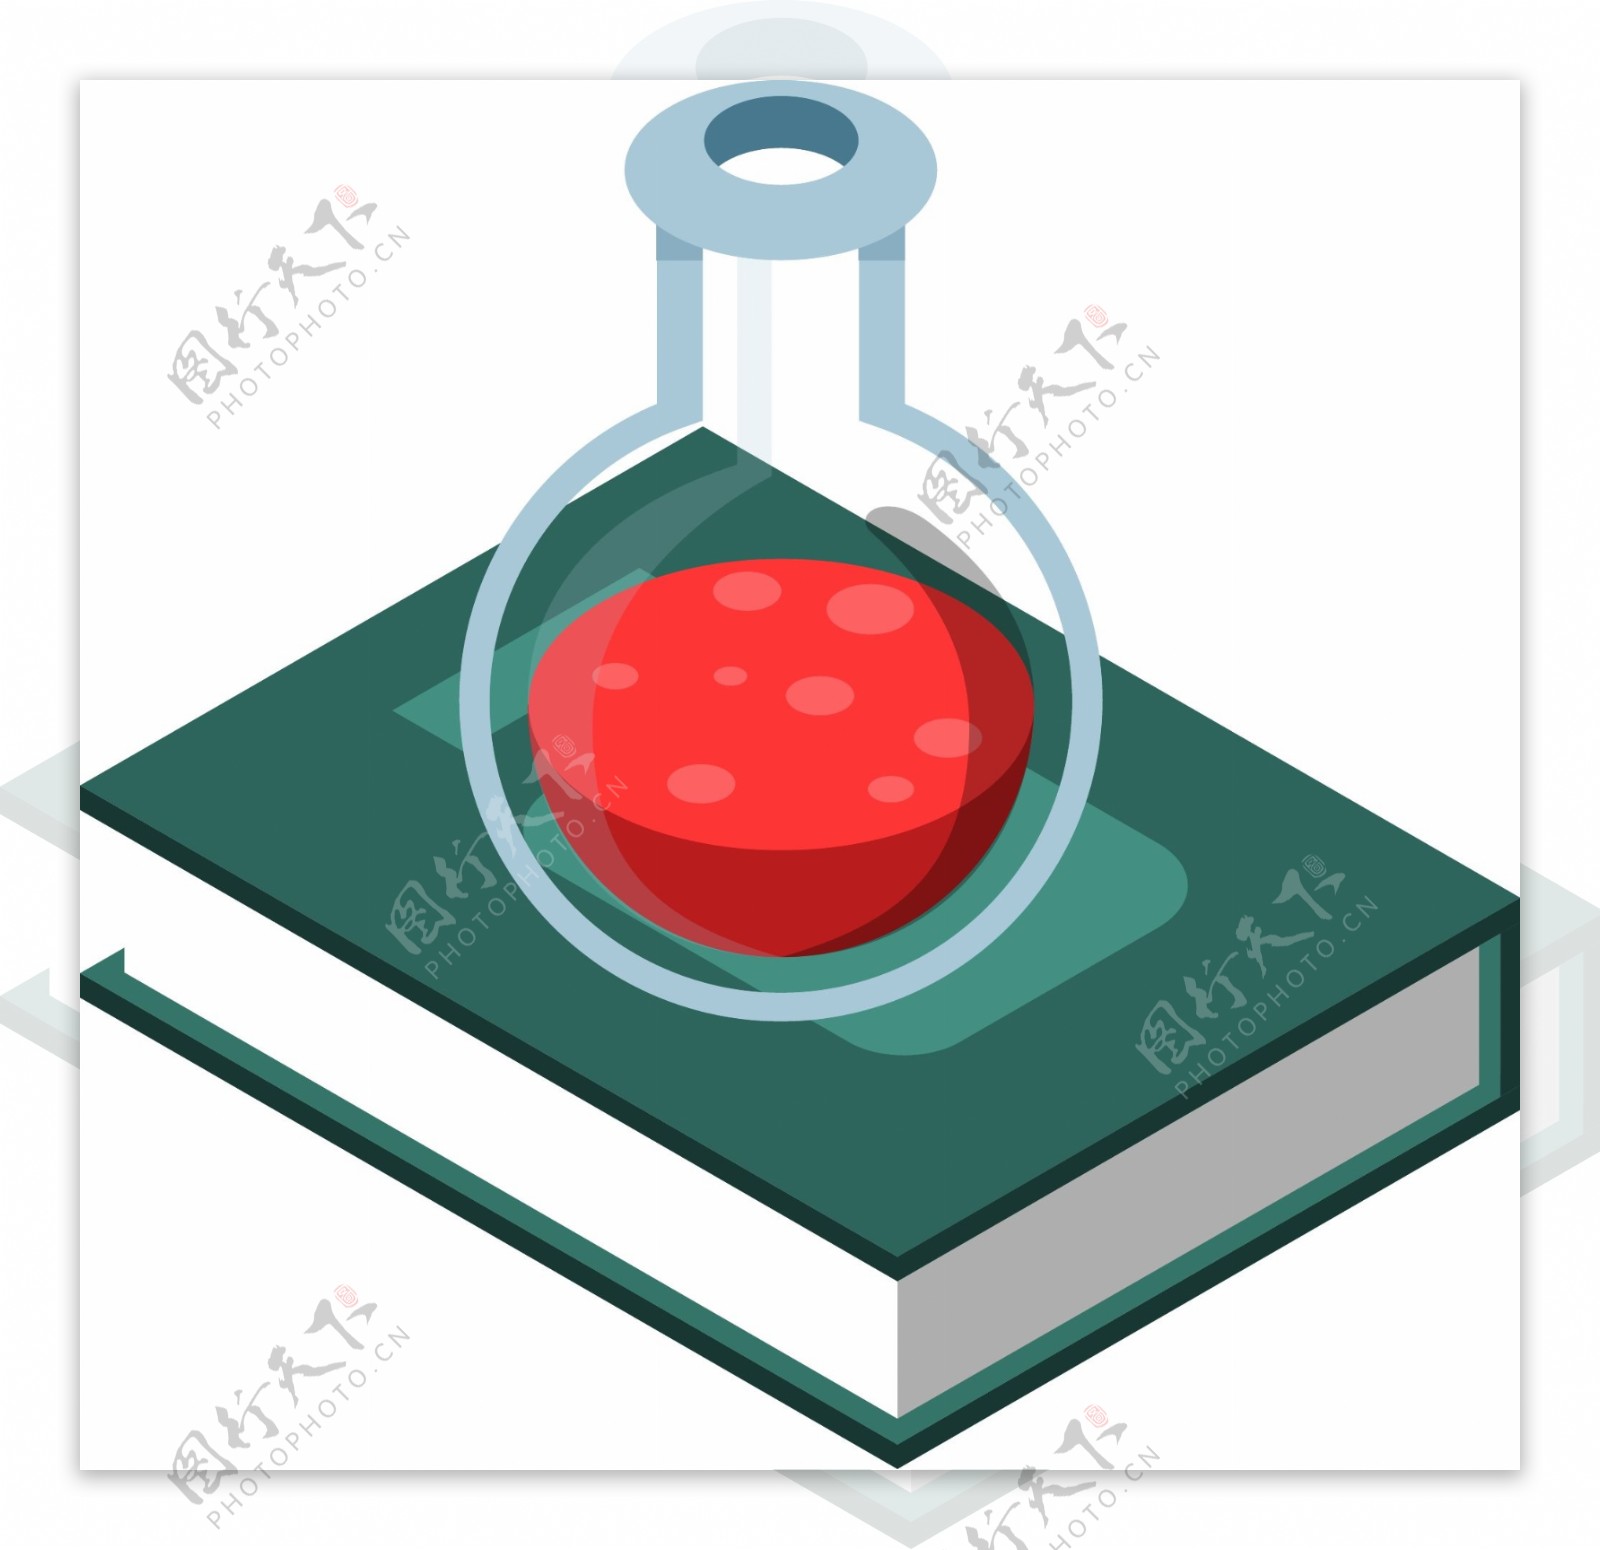 简约风格化学实验书籍元素可商用